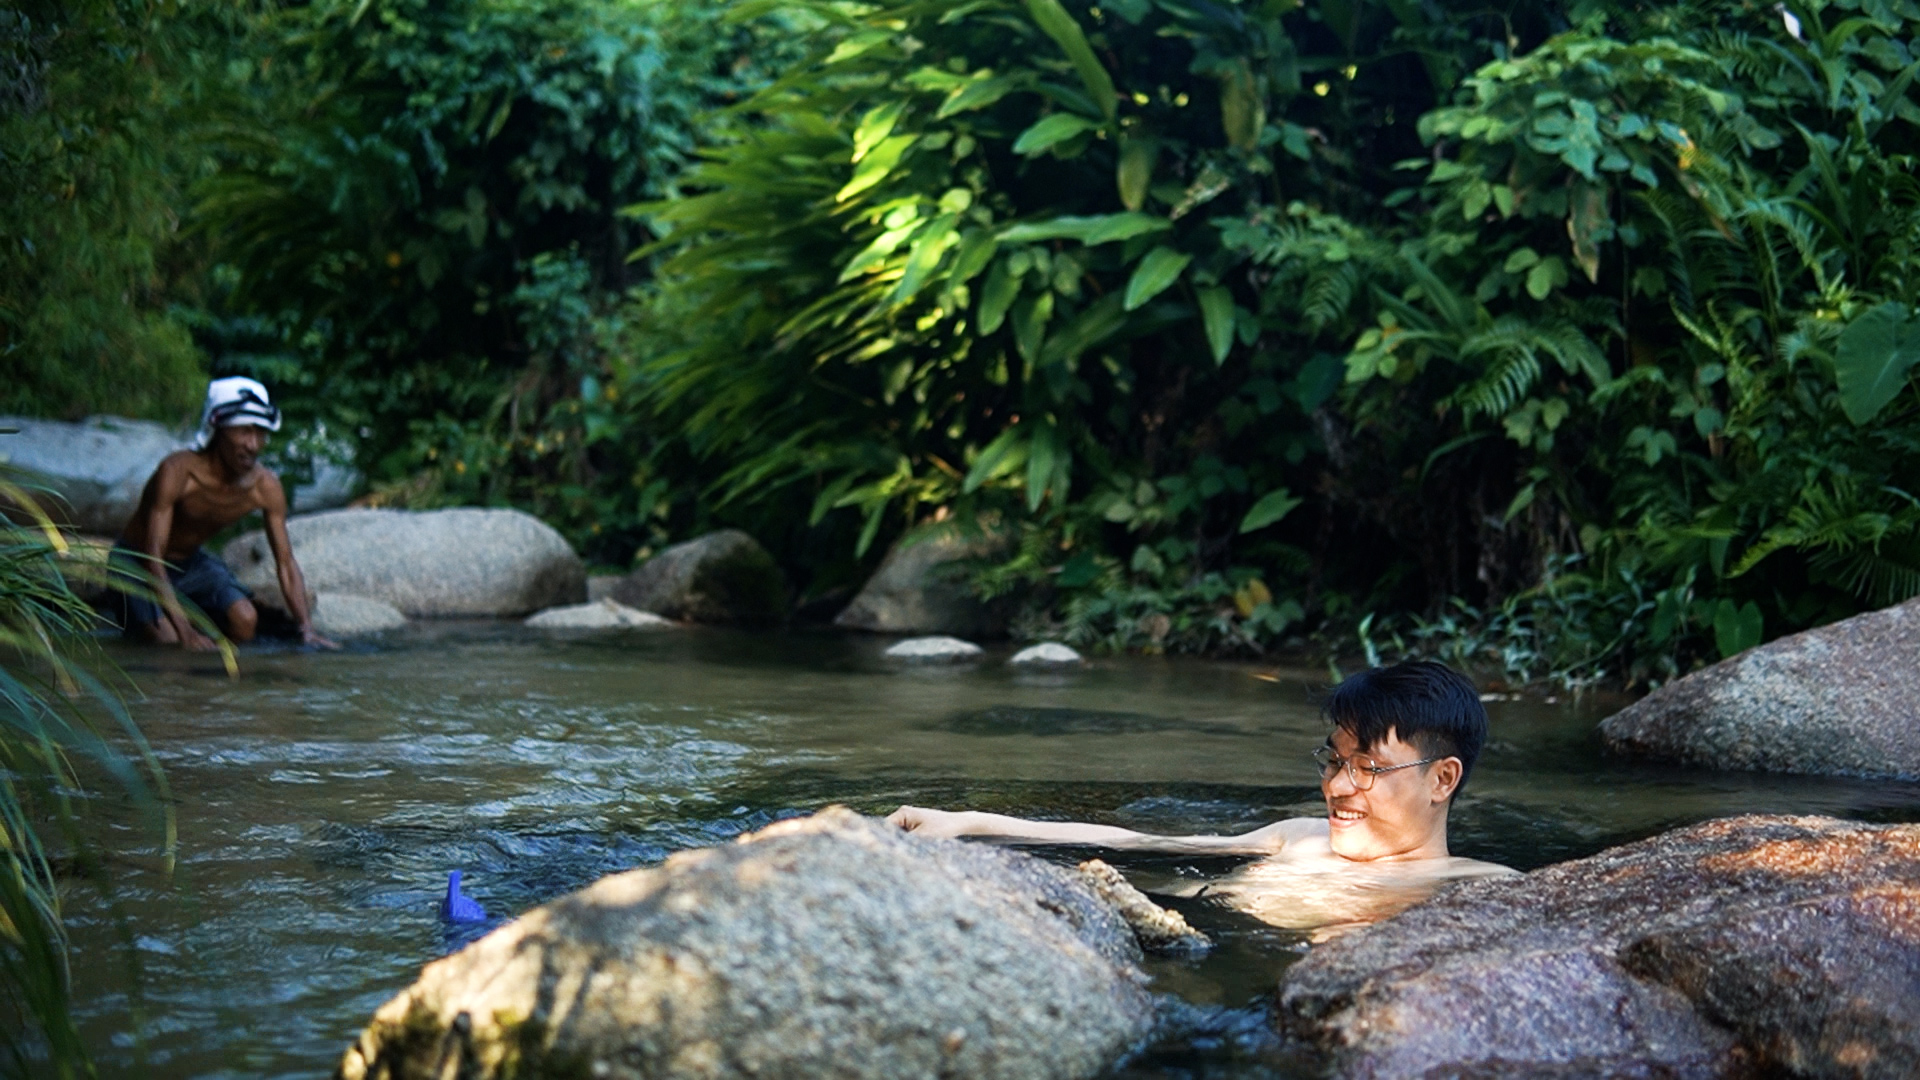 Xu hướng tắm ta ‘hút’ khách Việt: Tắm cùng nhau, trở về với thiên nhiên - Ảnh 4.